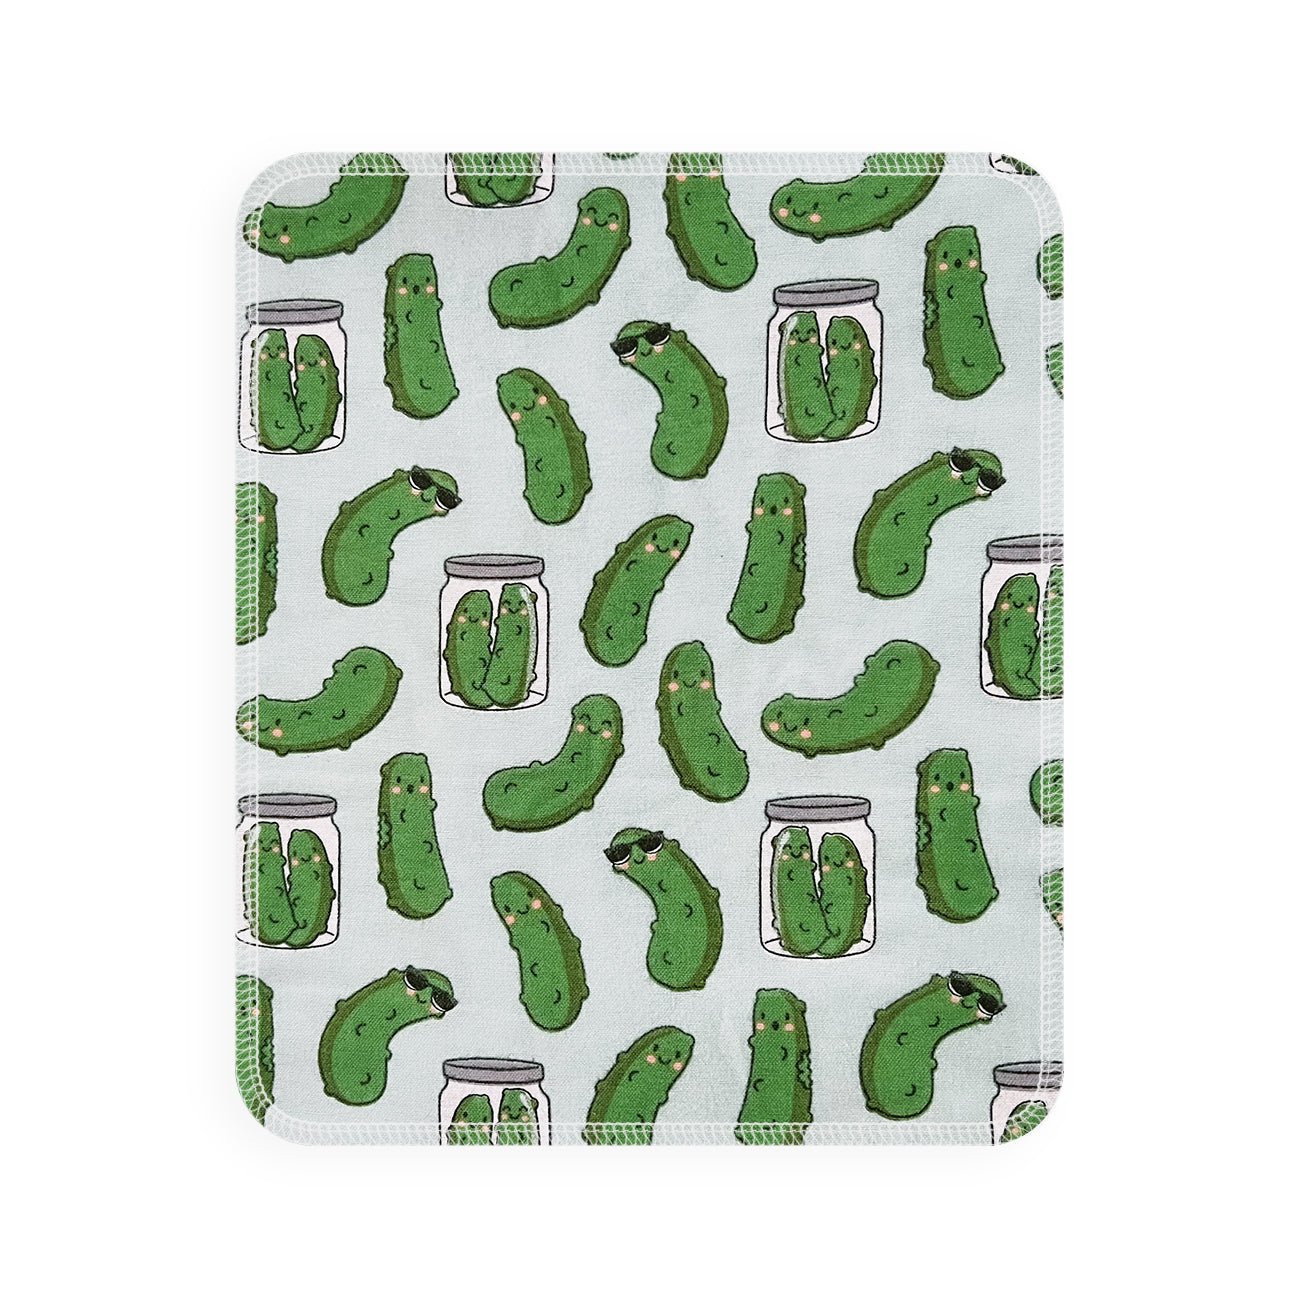 Marley's Monsters UNpaper® Towel Single: Pickles